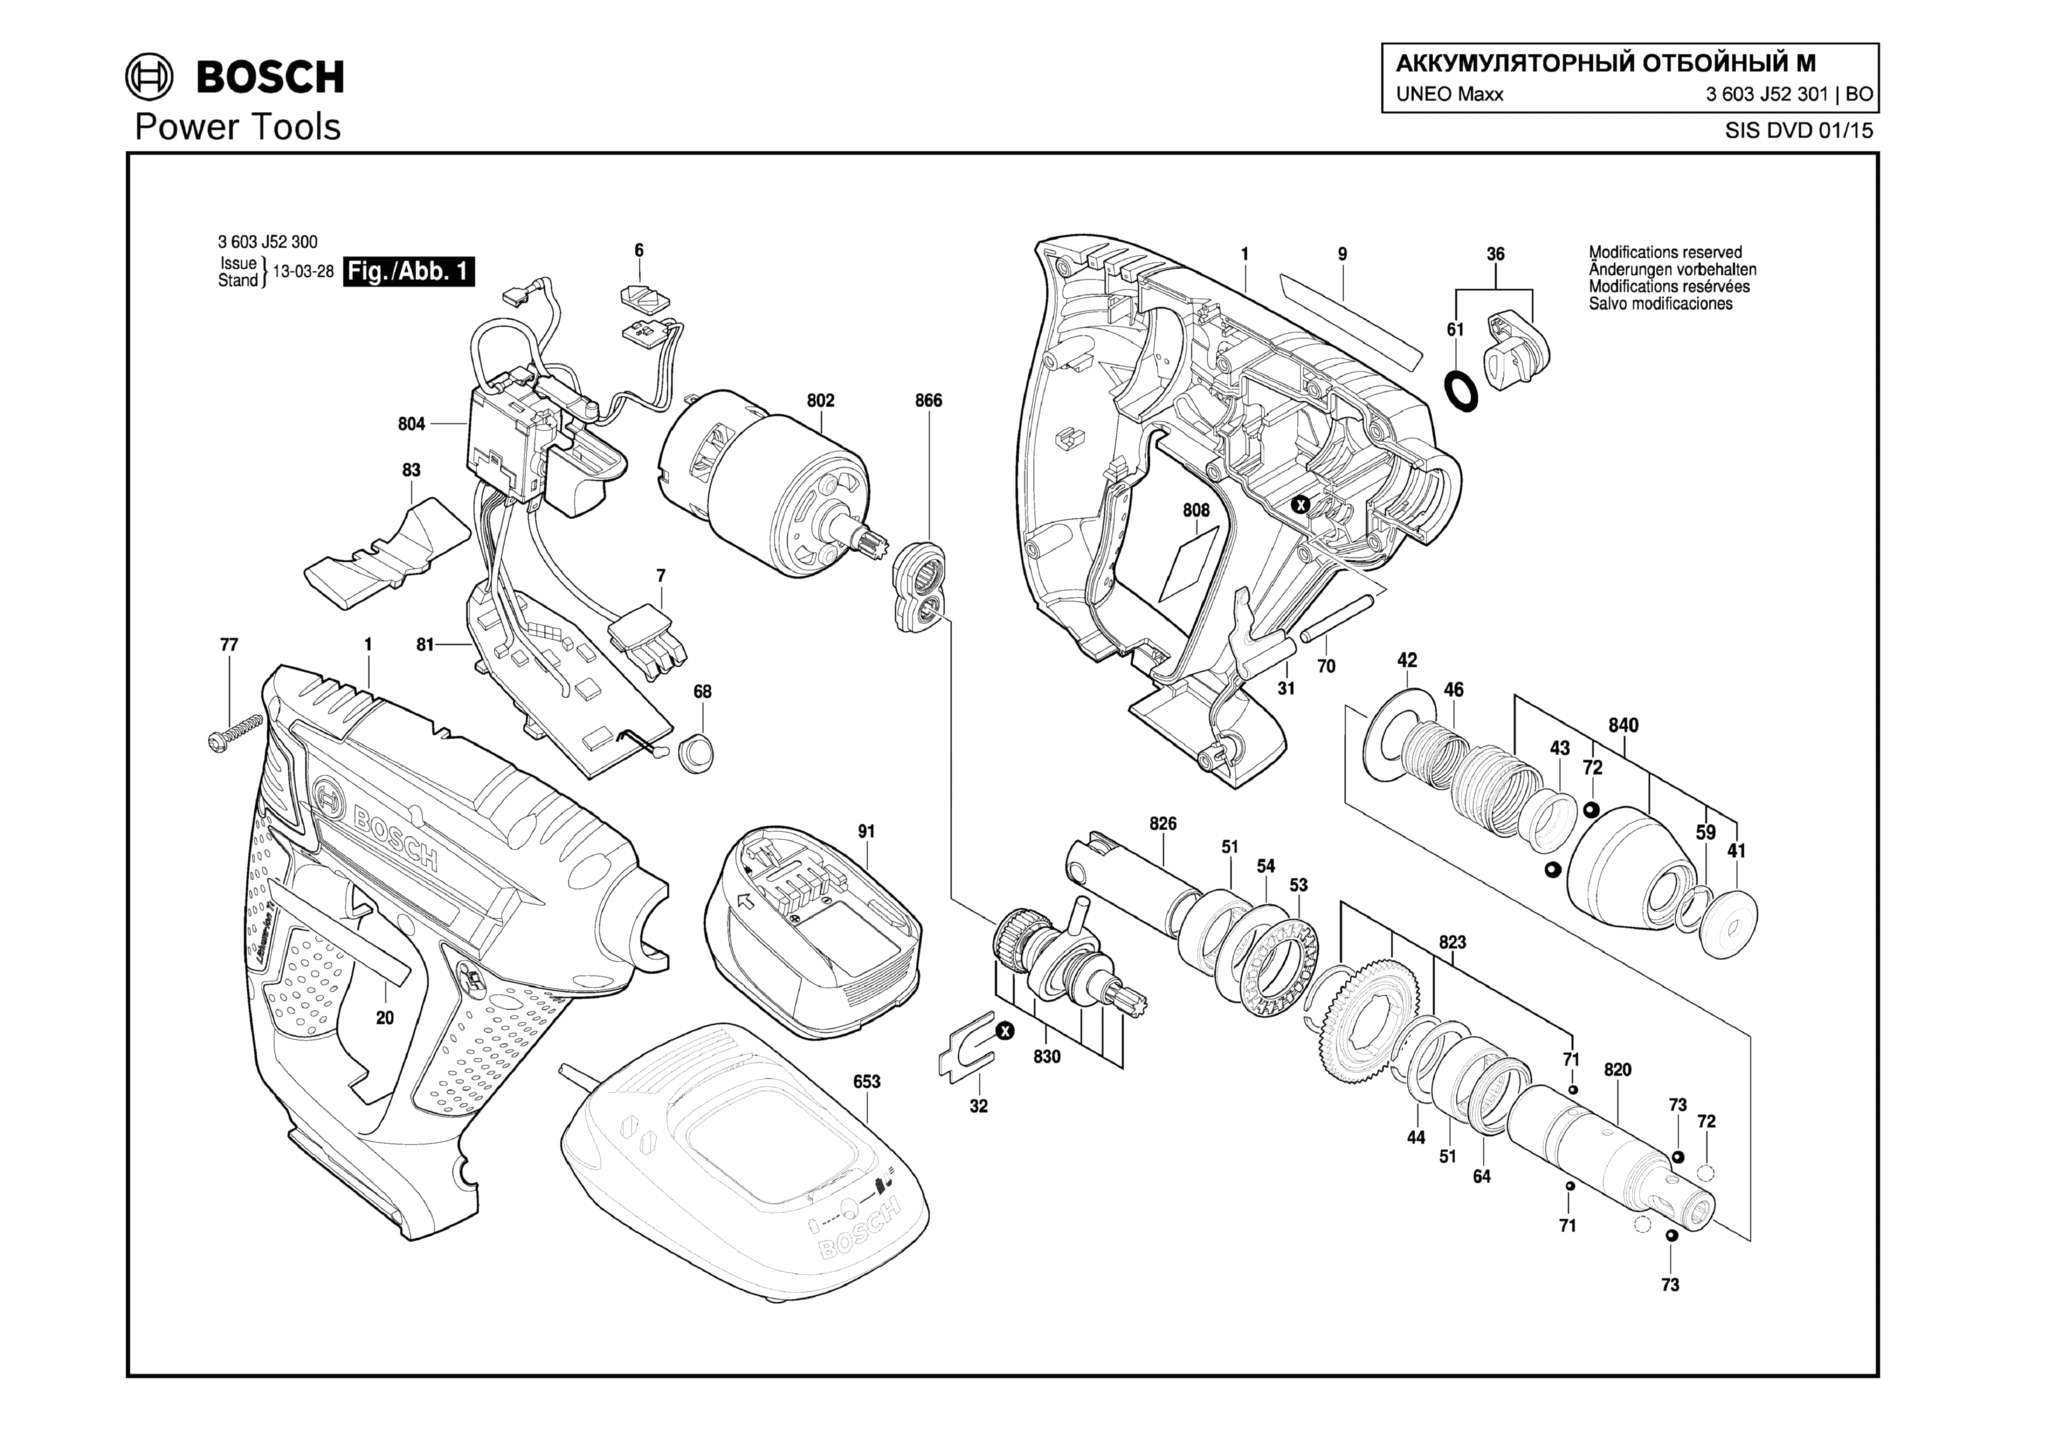 Запчасти, схема и деталировка Bosch UNEO MAXX (ТИП 3603J52301)